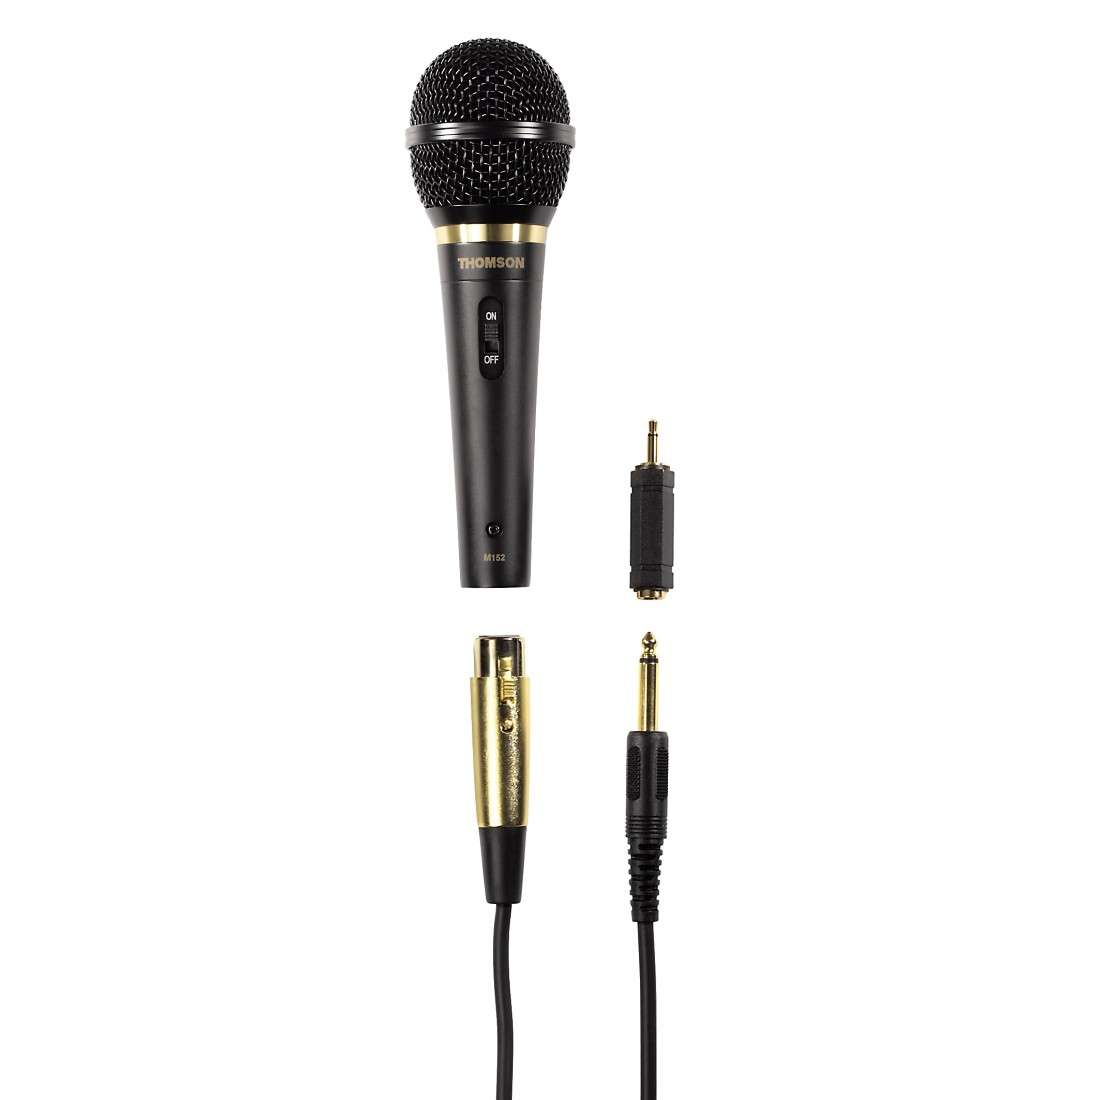 THOMSON (LIZENZMARKE) M152 Dynamisches Mikrofon mit XLR-Stecker, Vocal